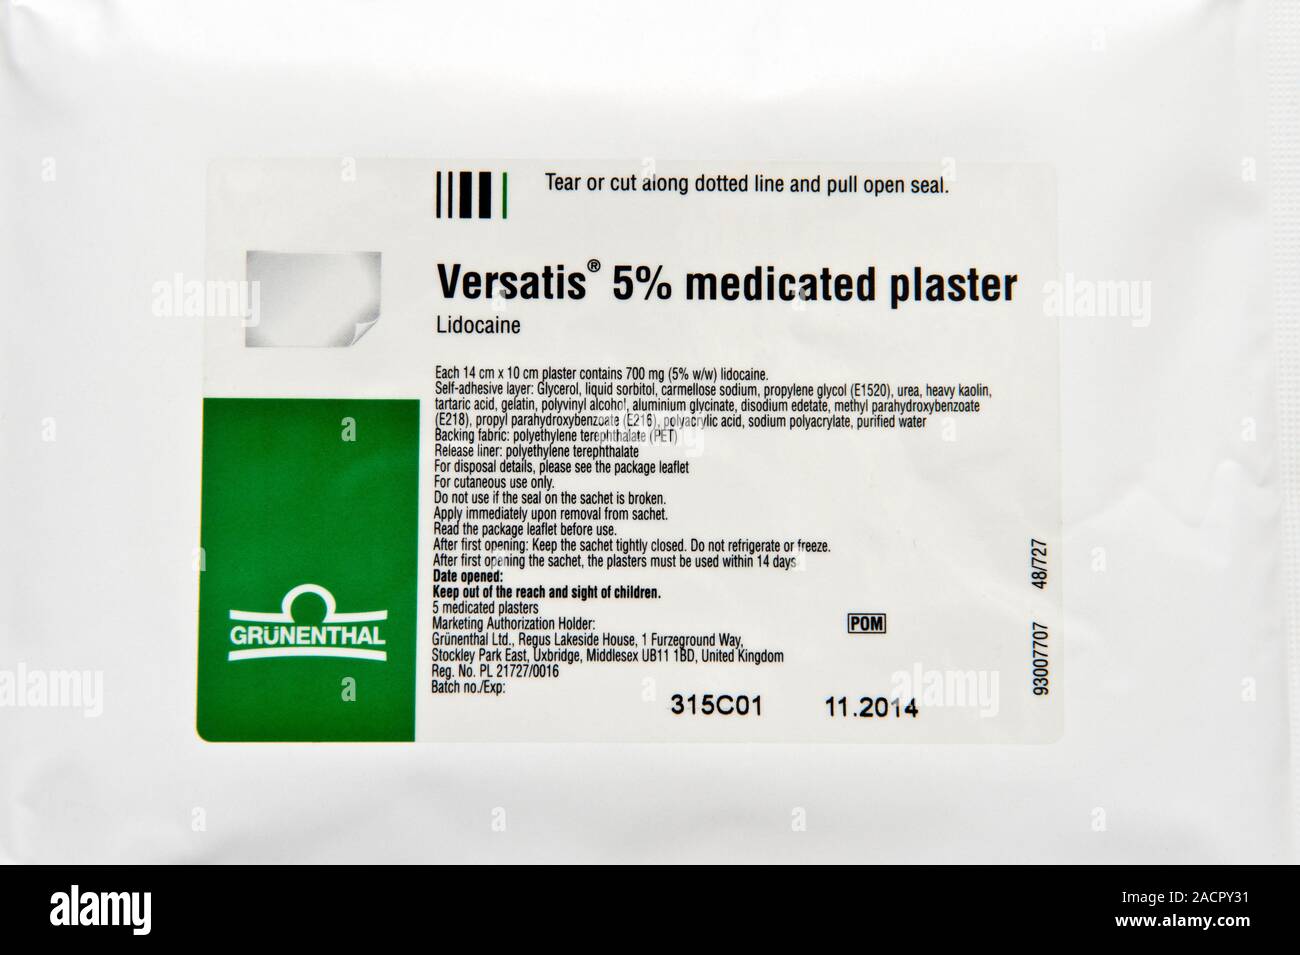 Versatis le pansement médicamenteux contenant l'ingrédient actif est la  lidocaïne (anesthésique local), utilisé pour traiter les douleurs nerveuses  à la suite de zona (post-herpétique Photo Stock - Alamy